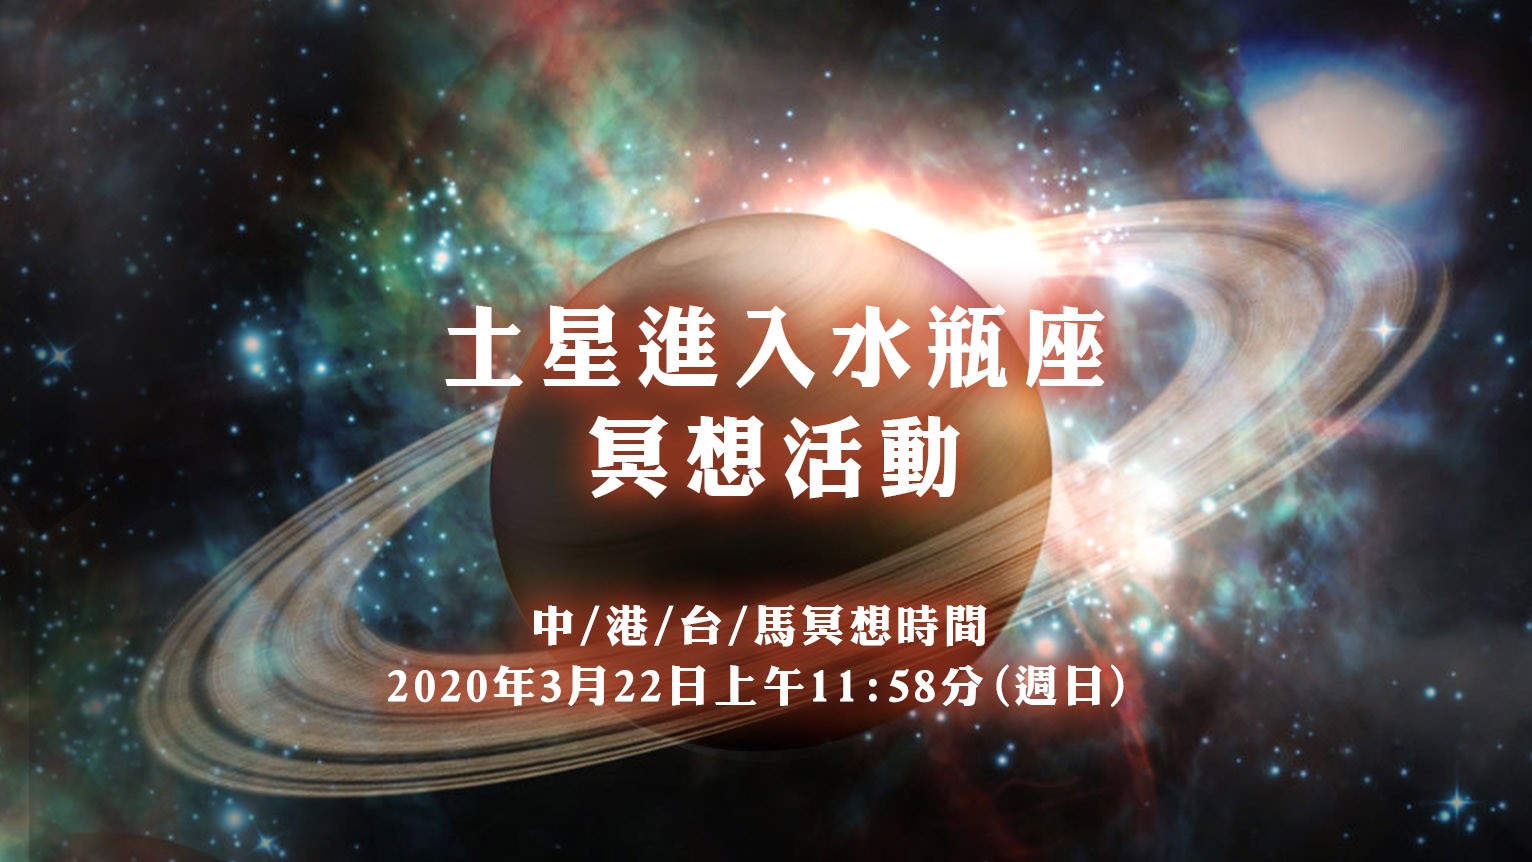 (3/20冥想內容及語音導引更新)2020年3月22日-土星進入水瓶座冥想活動